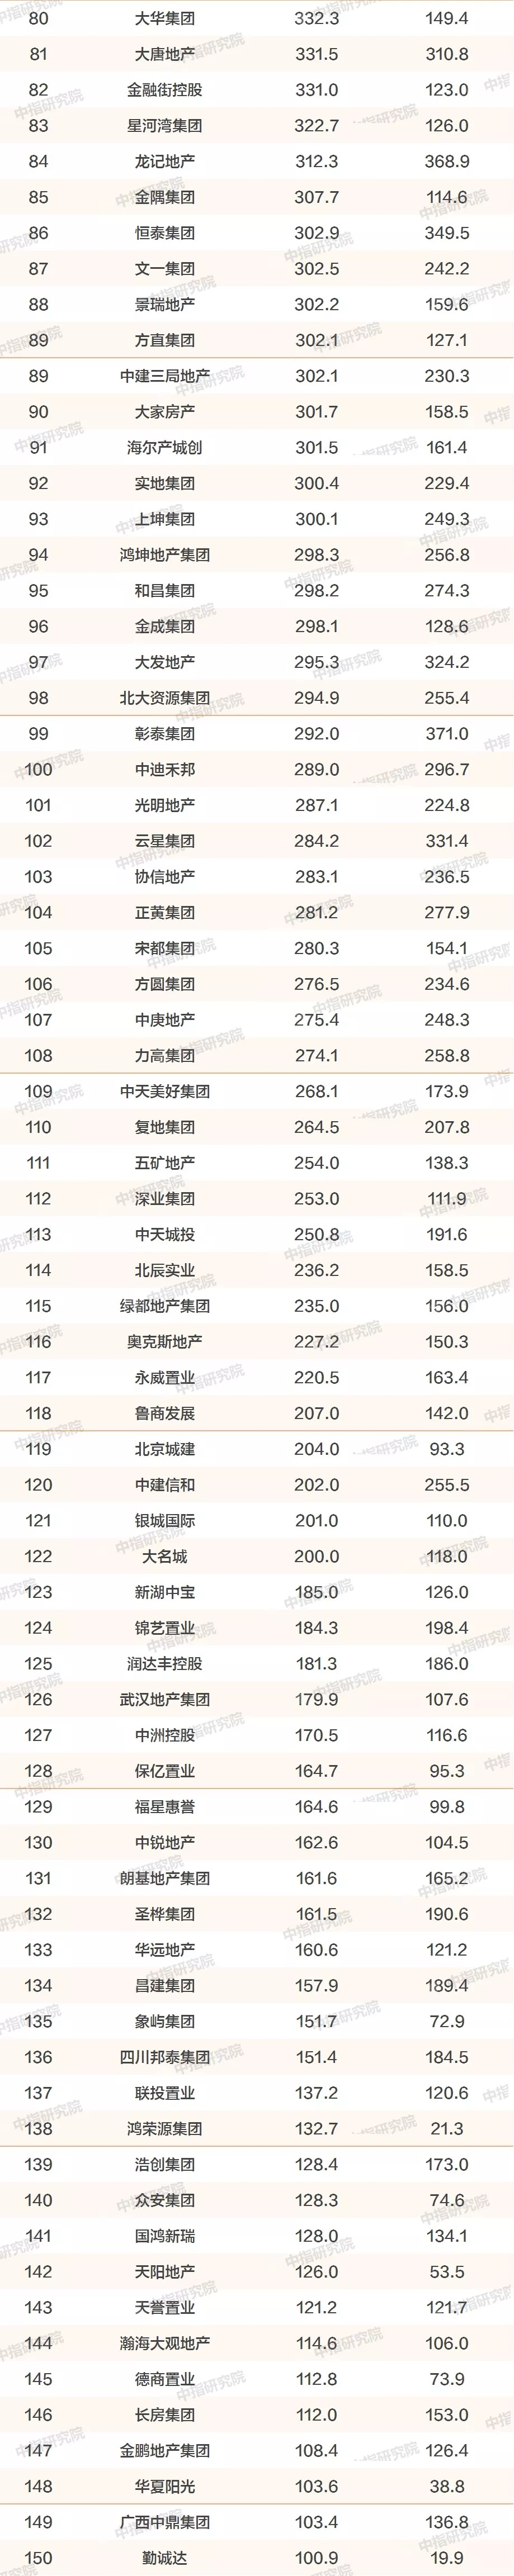 2019年中国房地产销售额百亿企业排行榜/房地产企业拿地排行榜